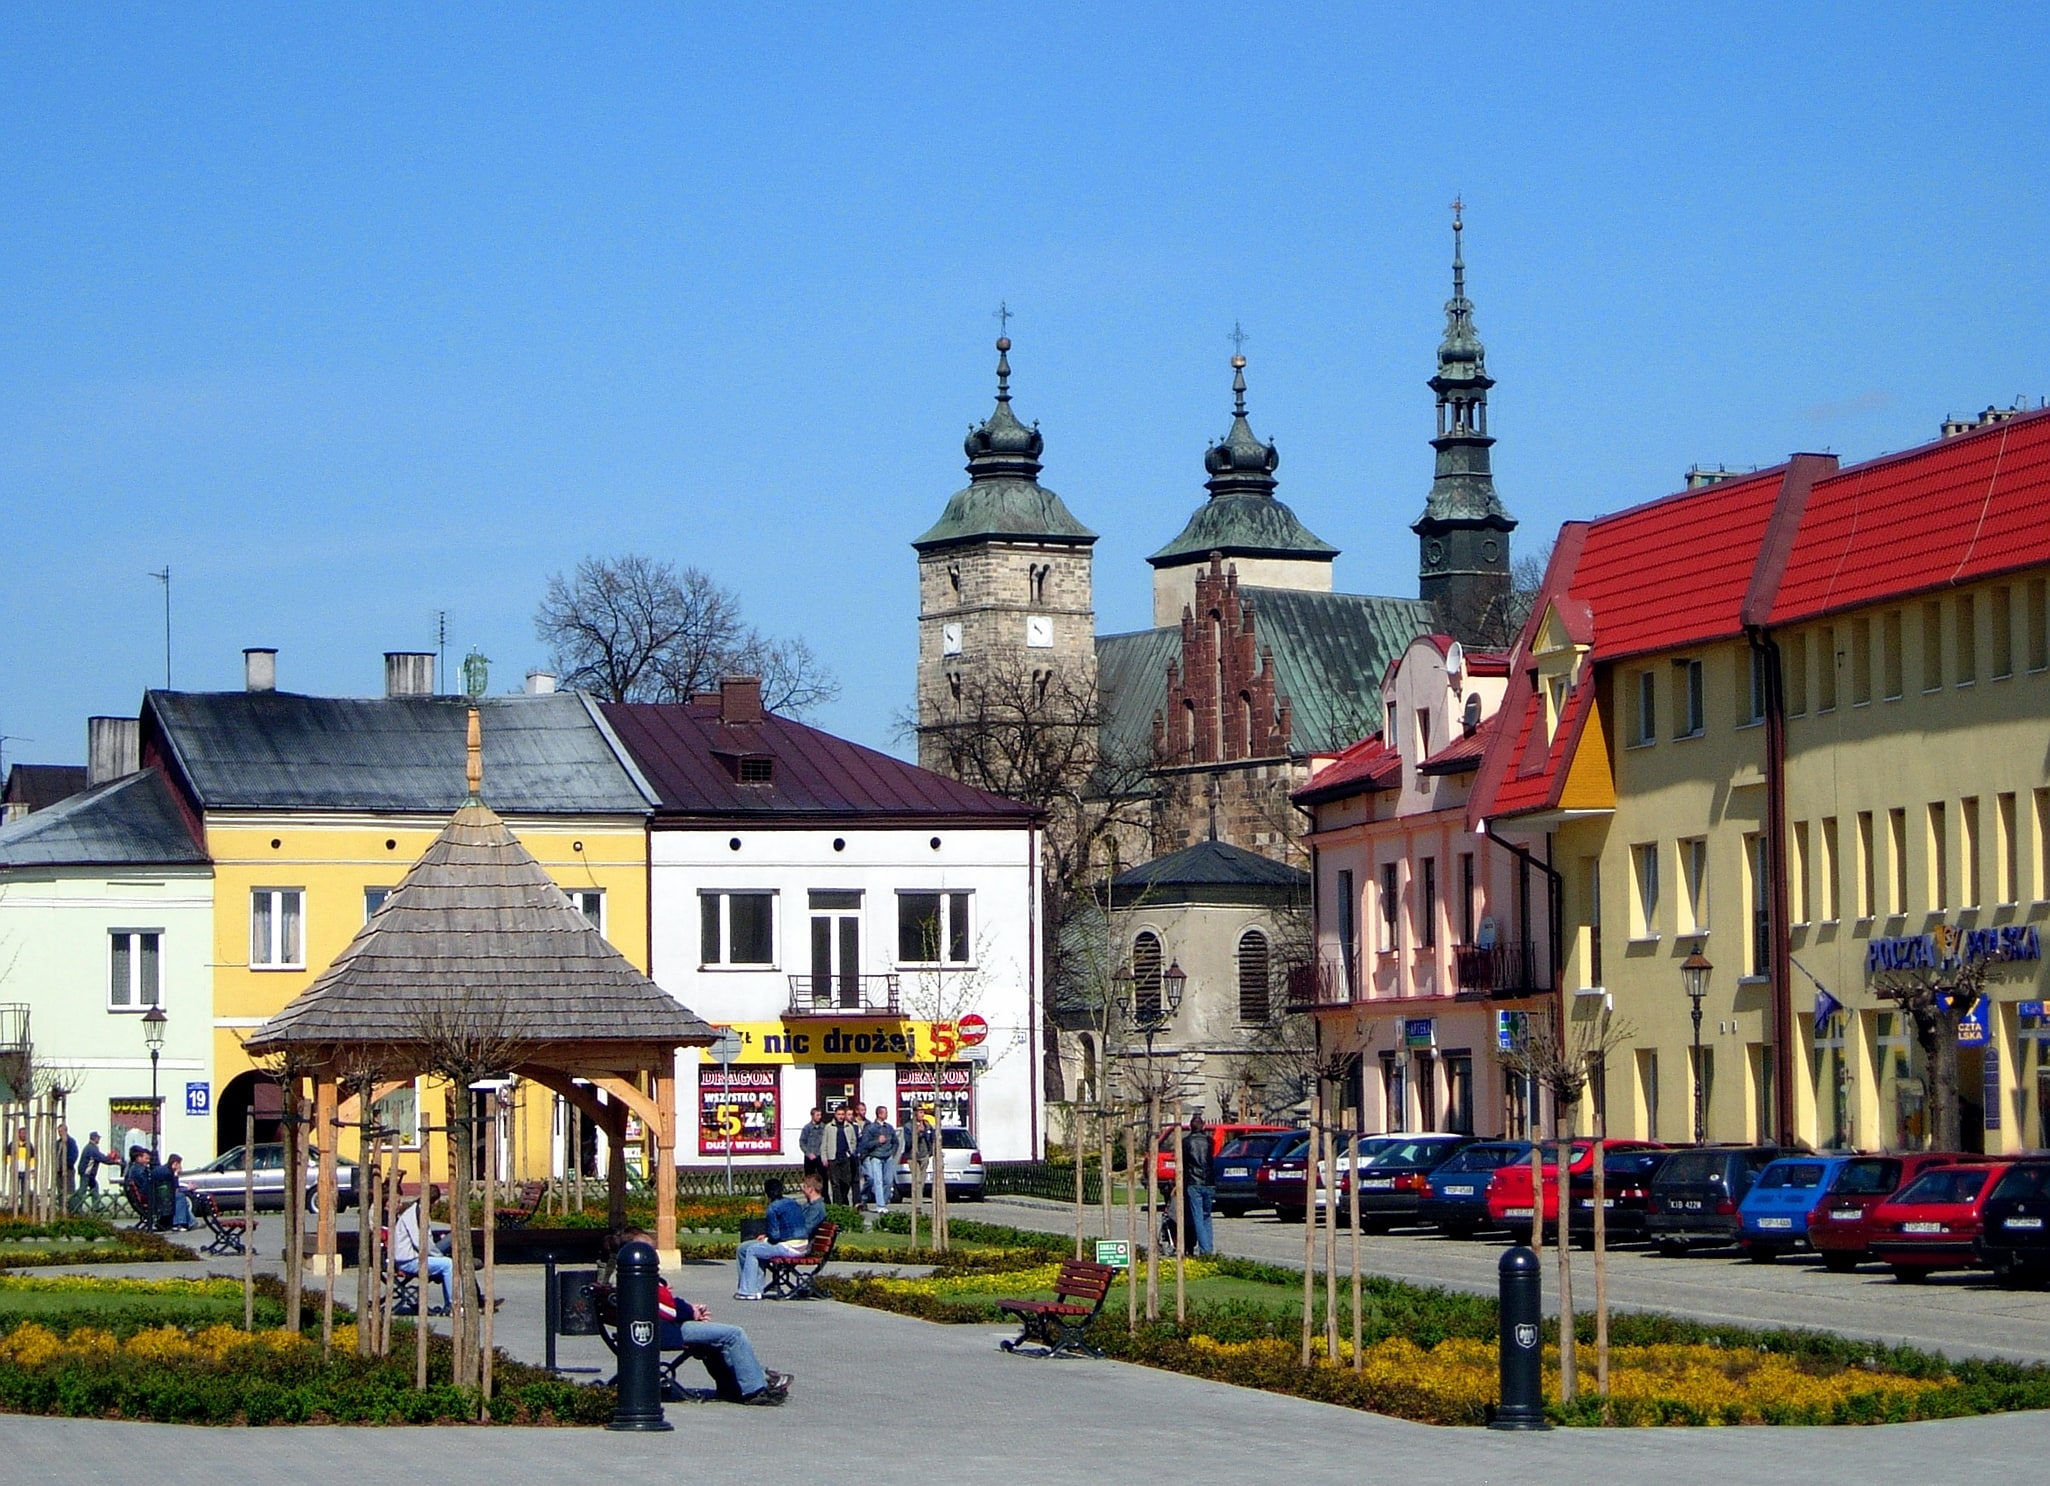 Opatów, Poland